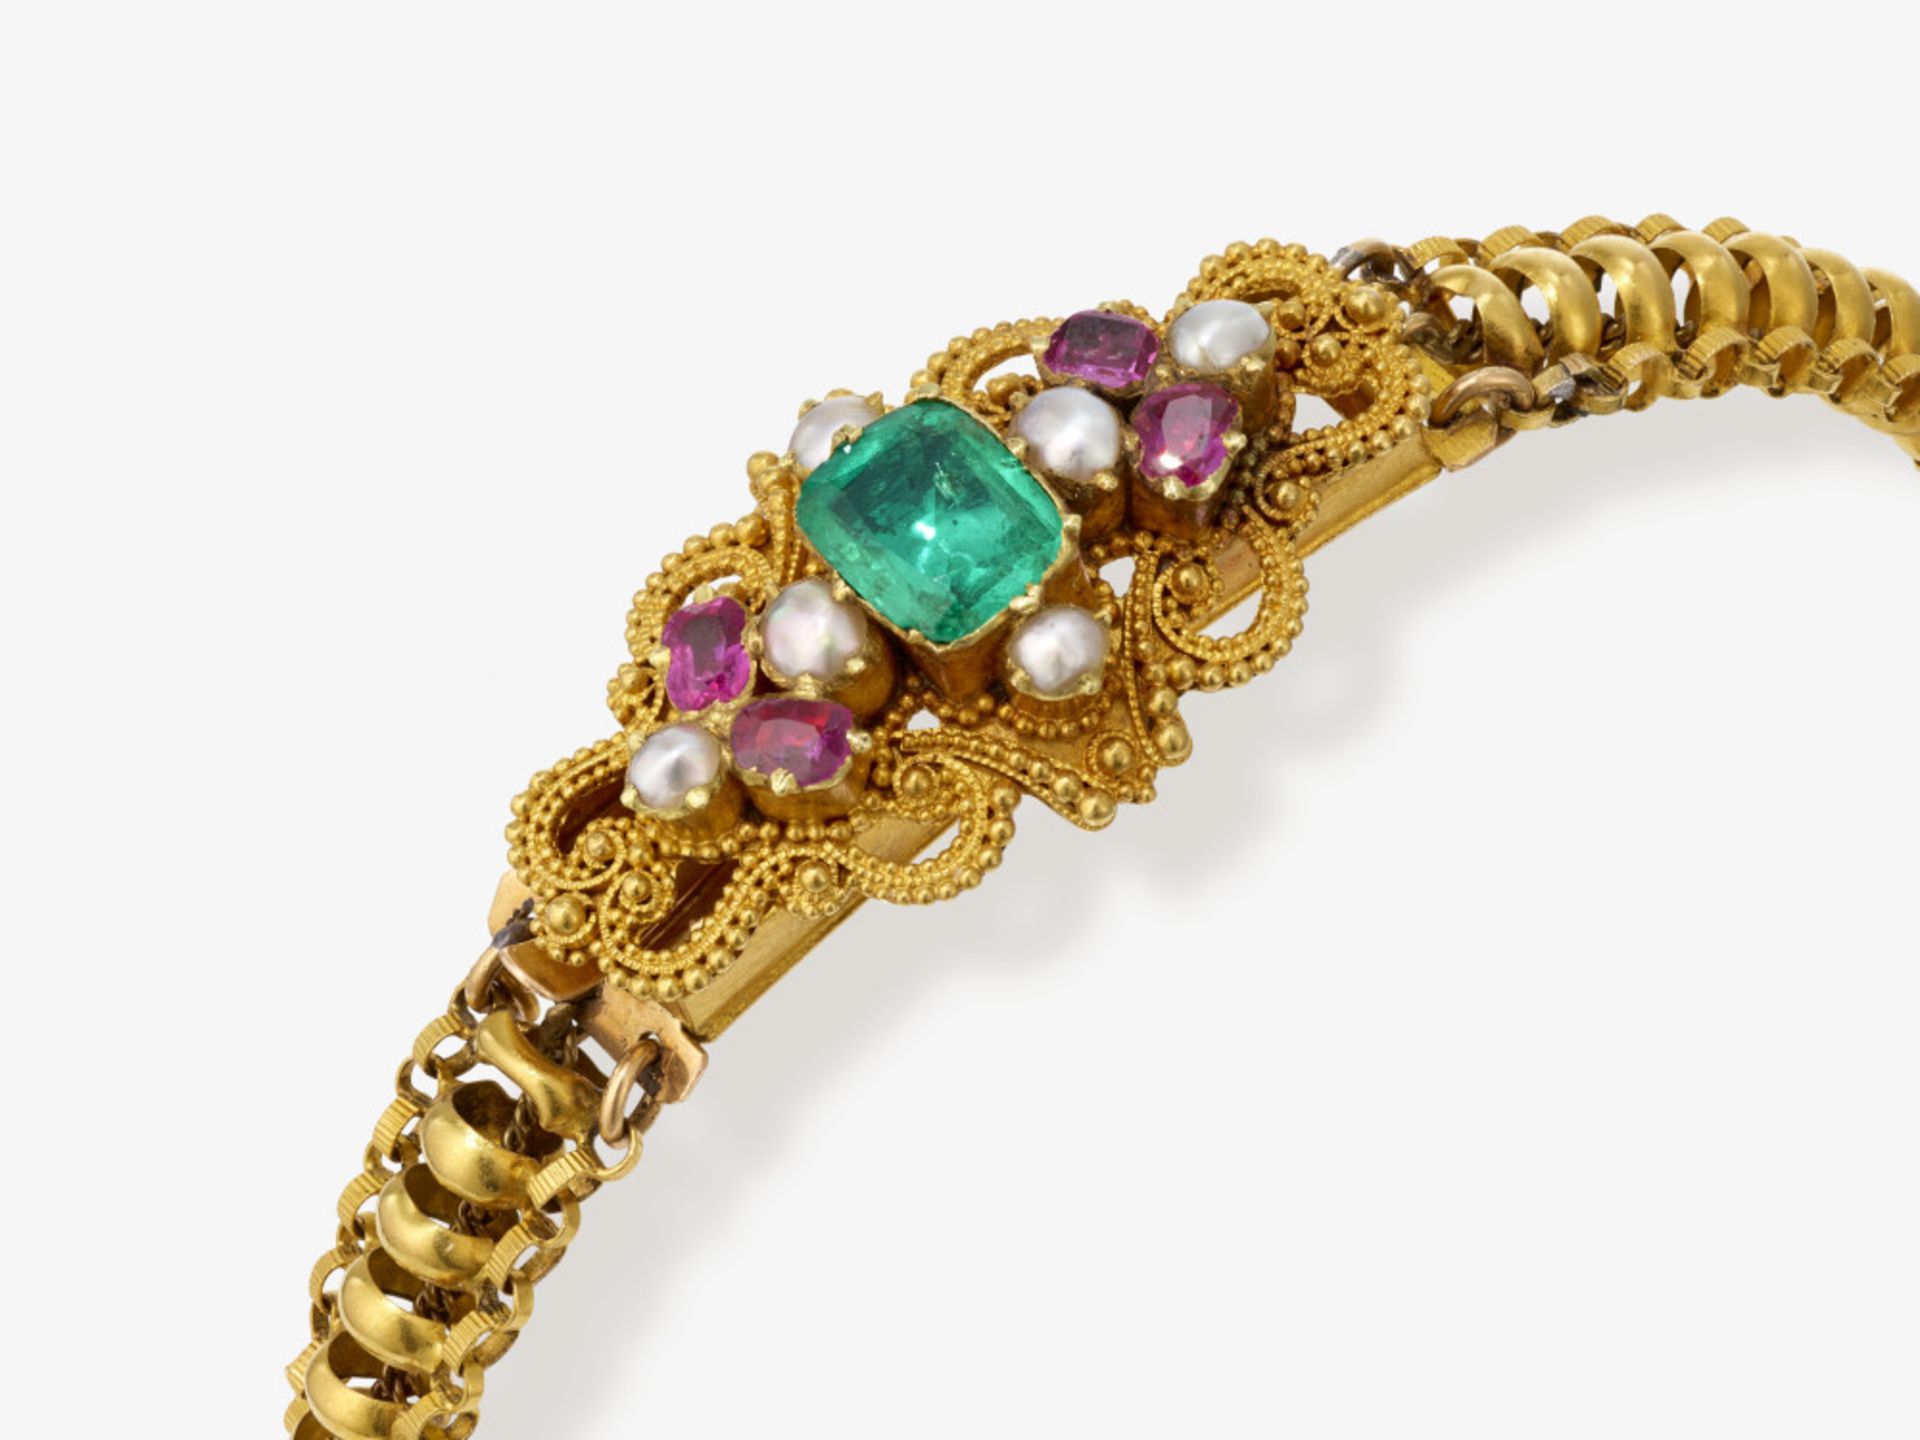 Armband mit schönem Smaragd, Rubinen und Perlen - Wohl Frankreich, um 1830 - Bild 2 aus 2